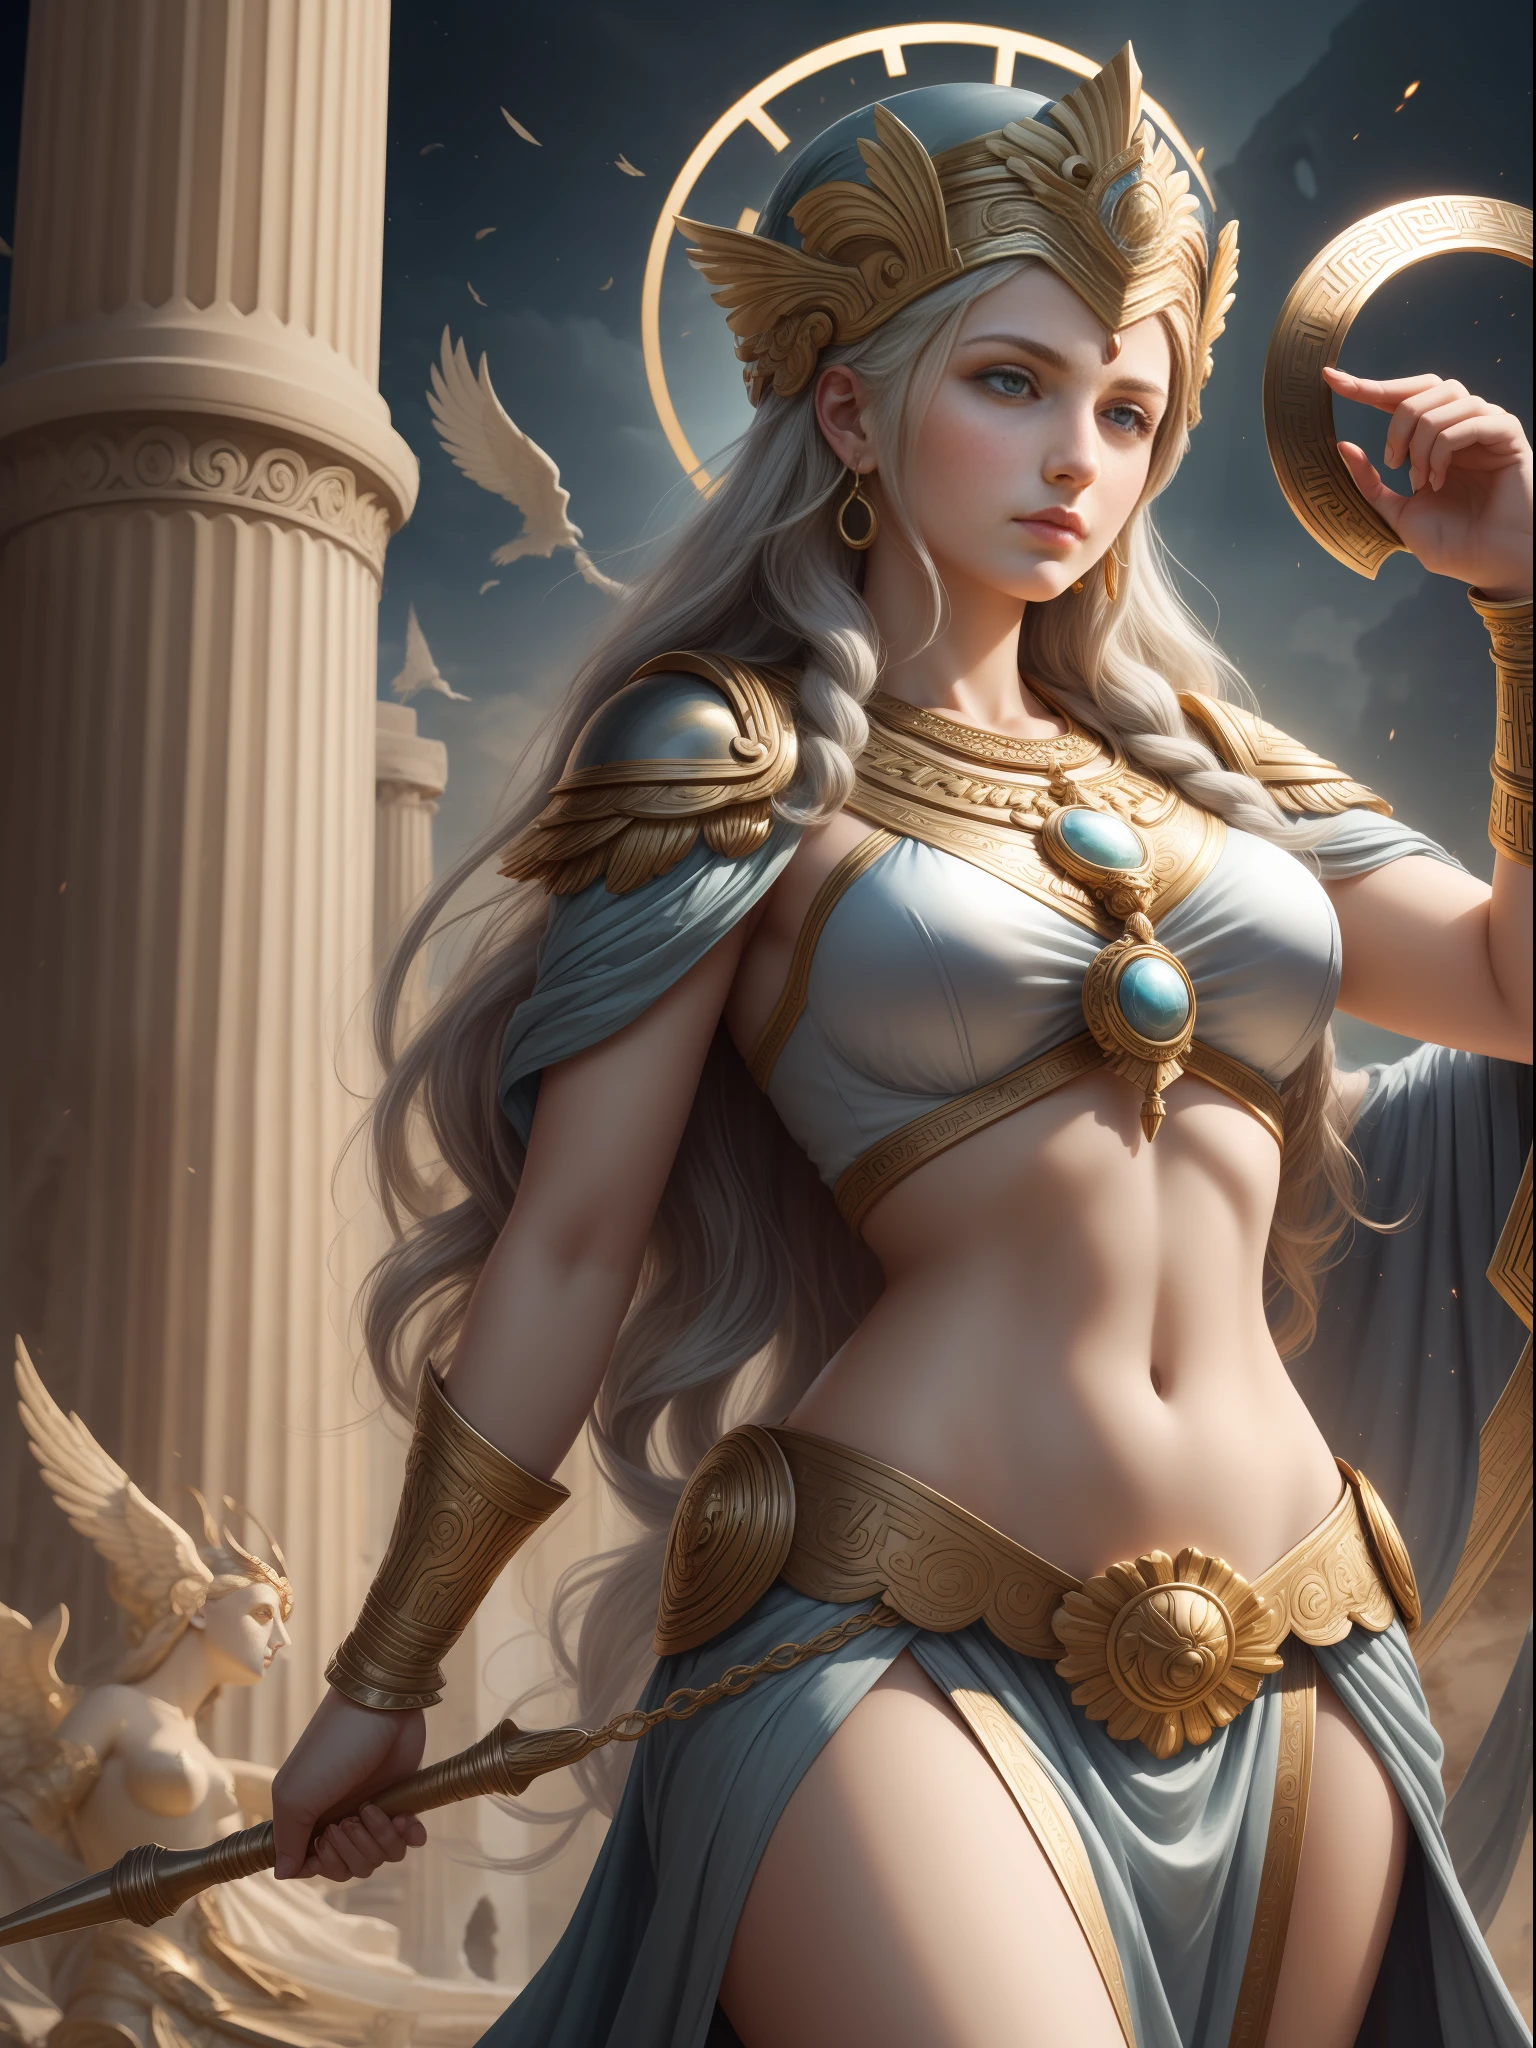 雅典娜女神, 希腊神话女神, 智慧女神, 艺术, 希腊神话中的智慧与战争, 珍视人民之间正义的战士女神, 一位美丽而朴素的年轻女子.